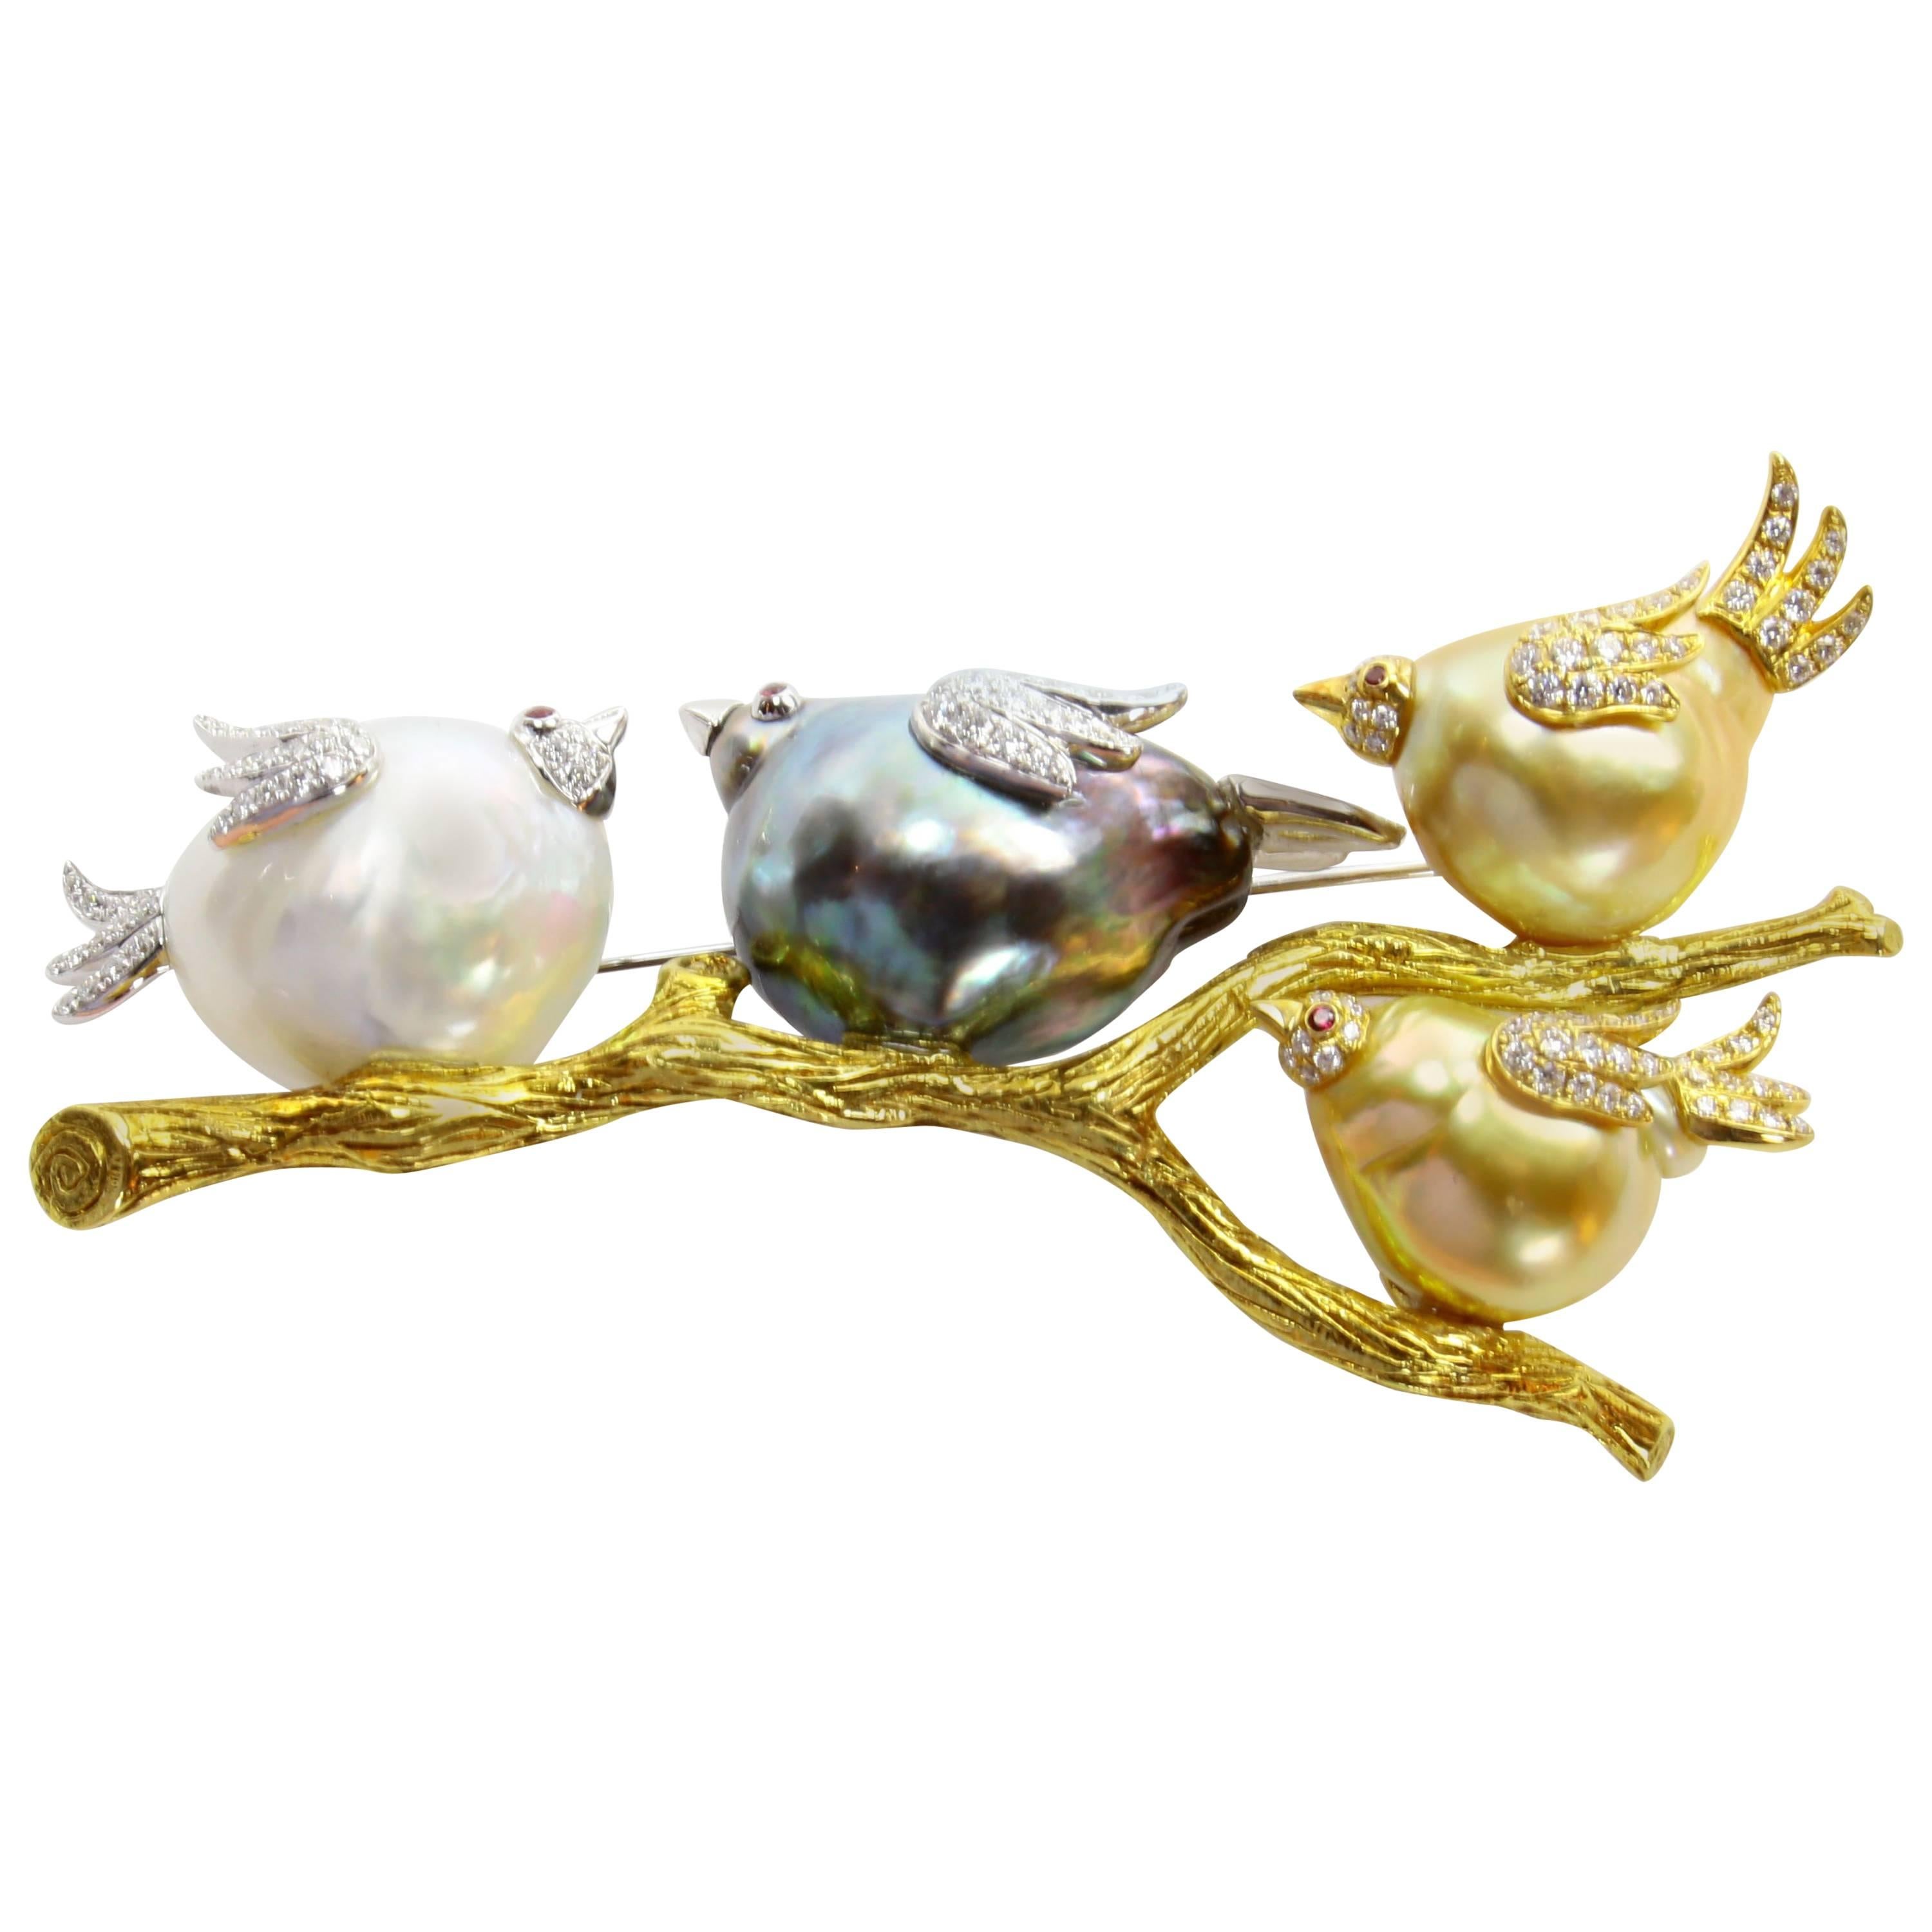 Südsee-Tahiti-Perle Diamant-Familie von Vögeln auf einem Zweig Gold Brosche Pin